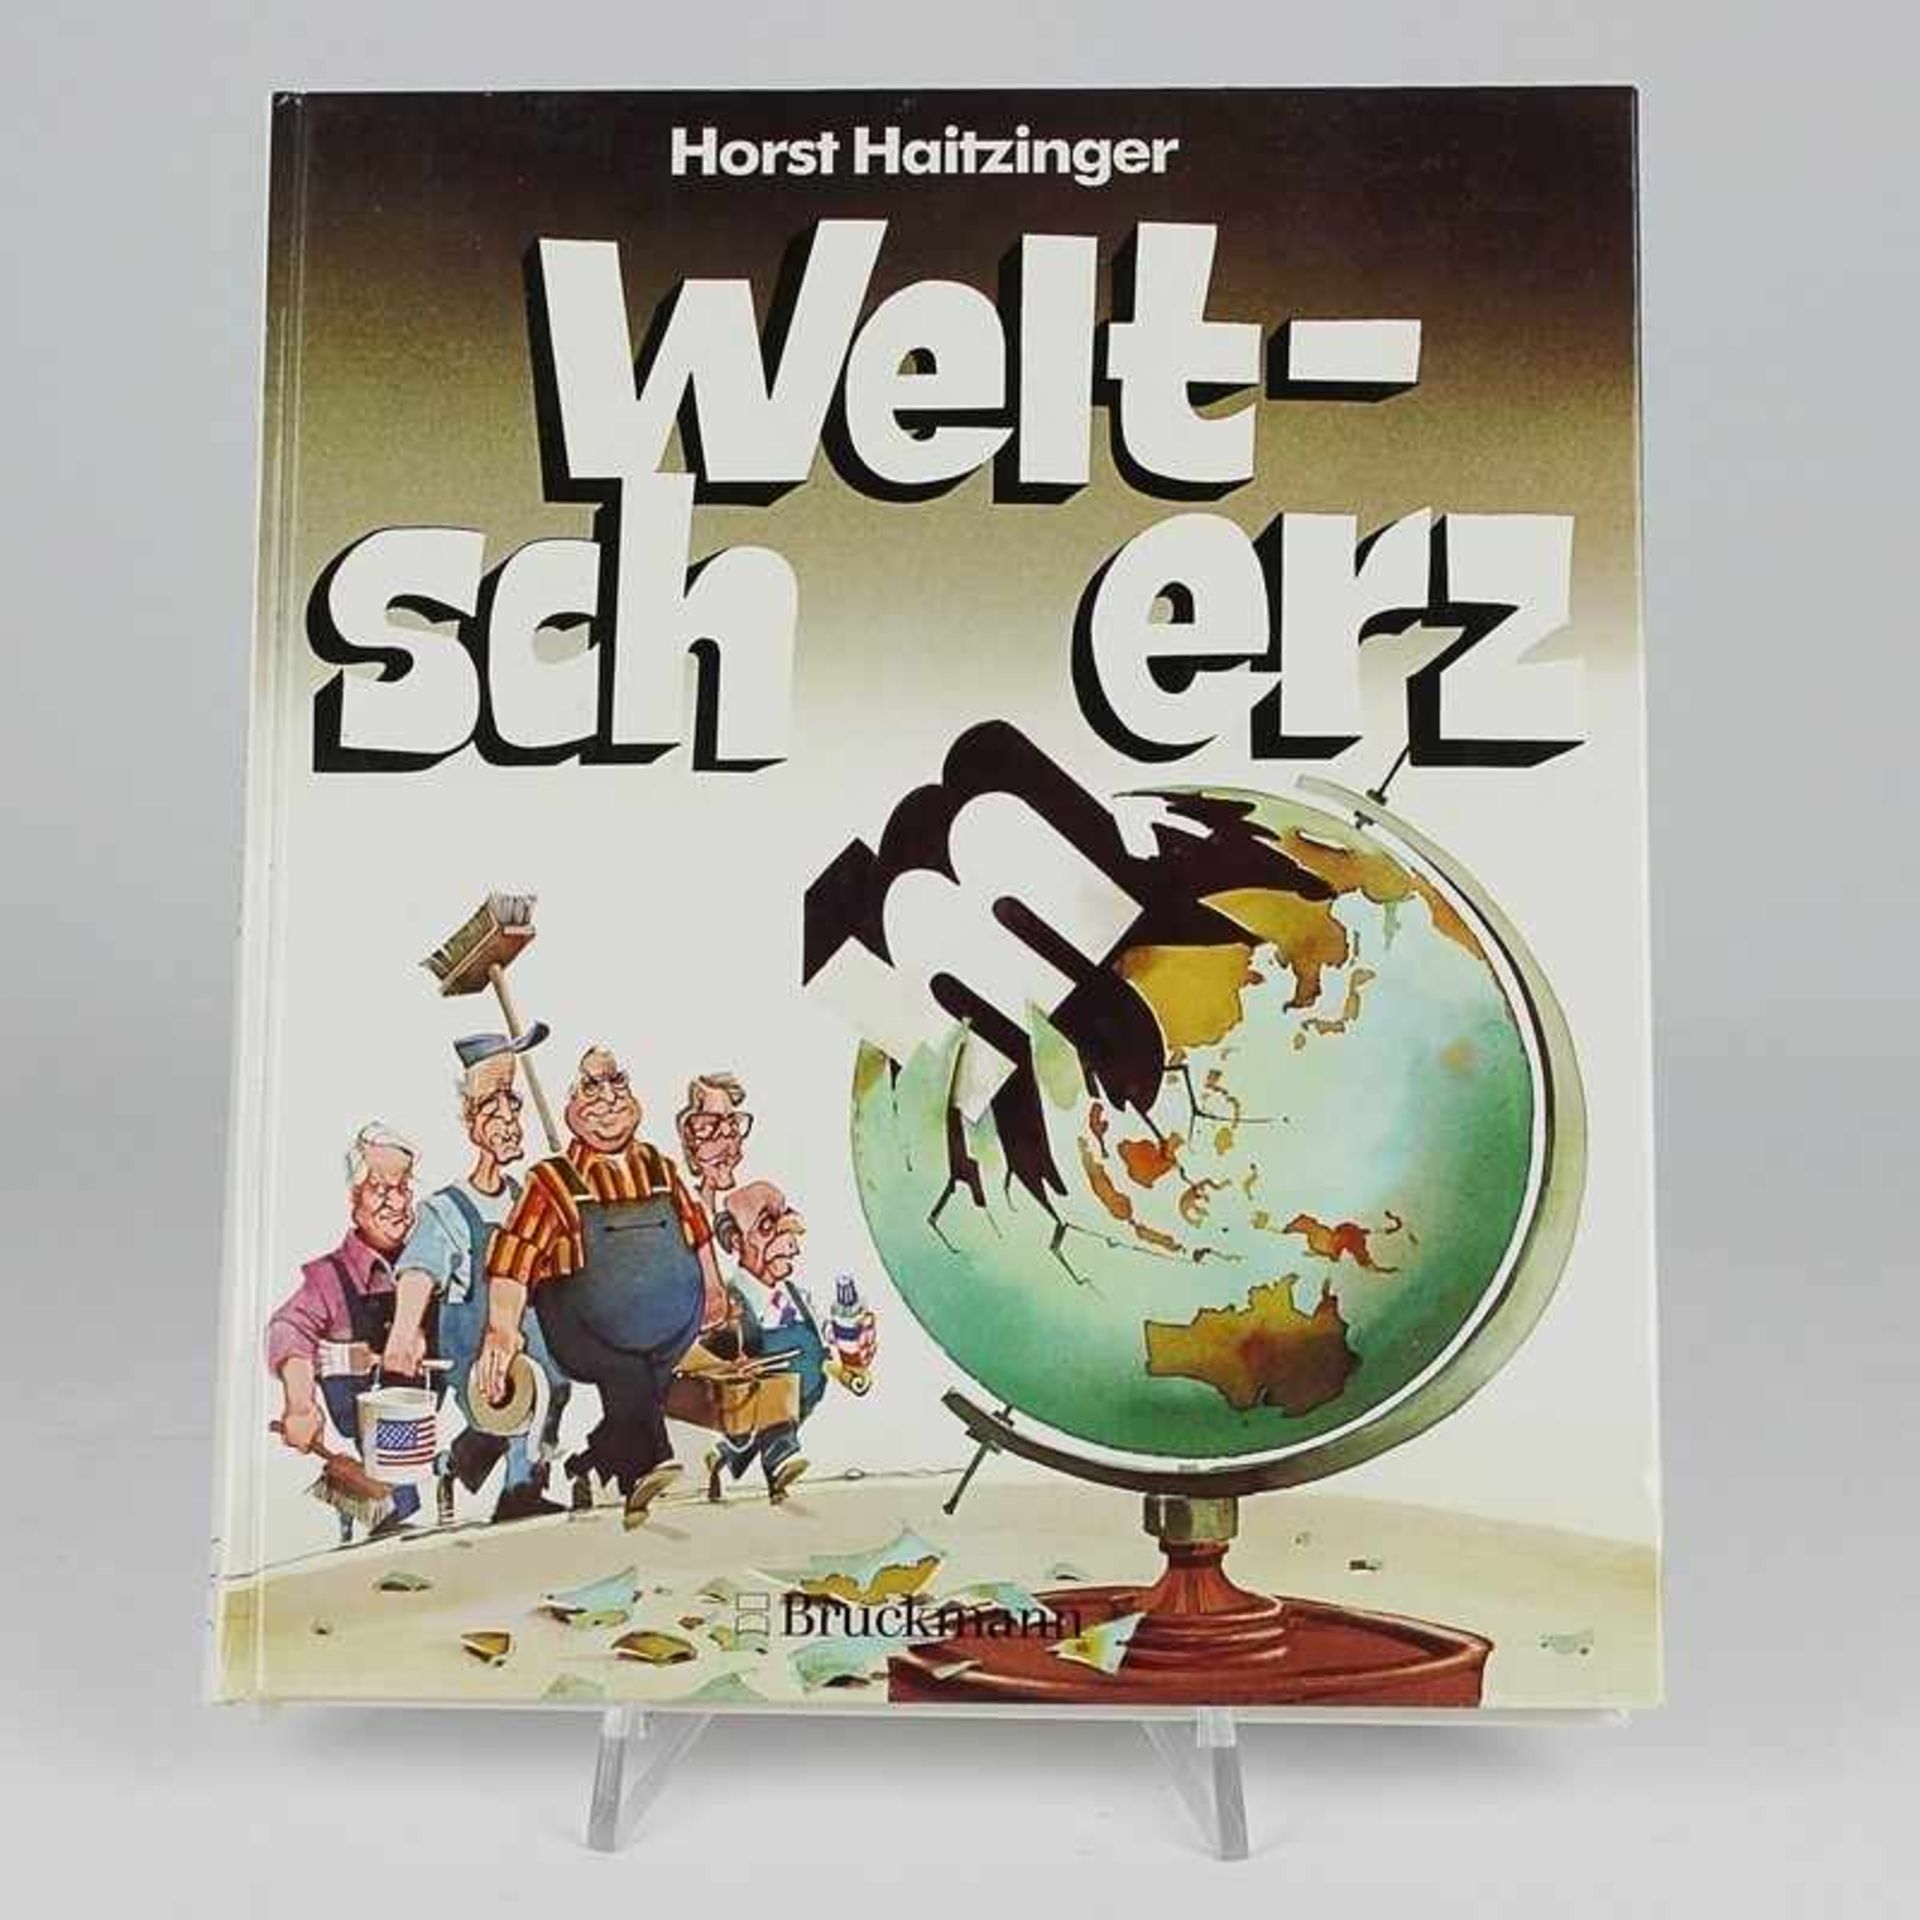 Haitzinger, Horst "Weltsch(m)erz", München F. Bruckmann KG 1992, 127S., m. Autograph des Autors,